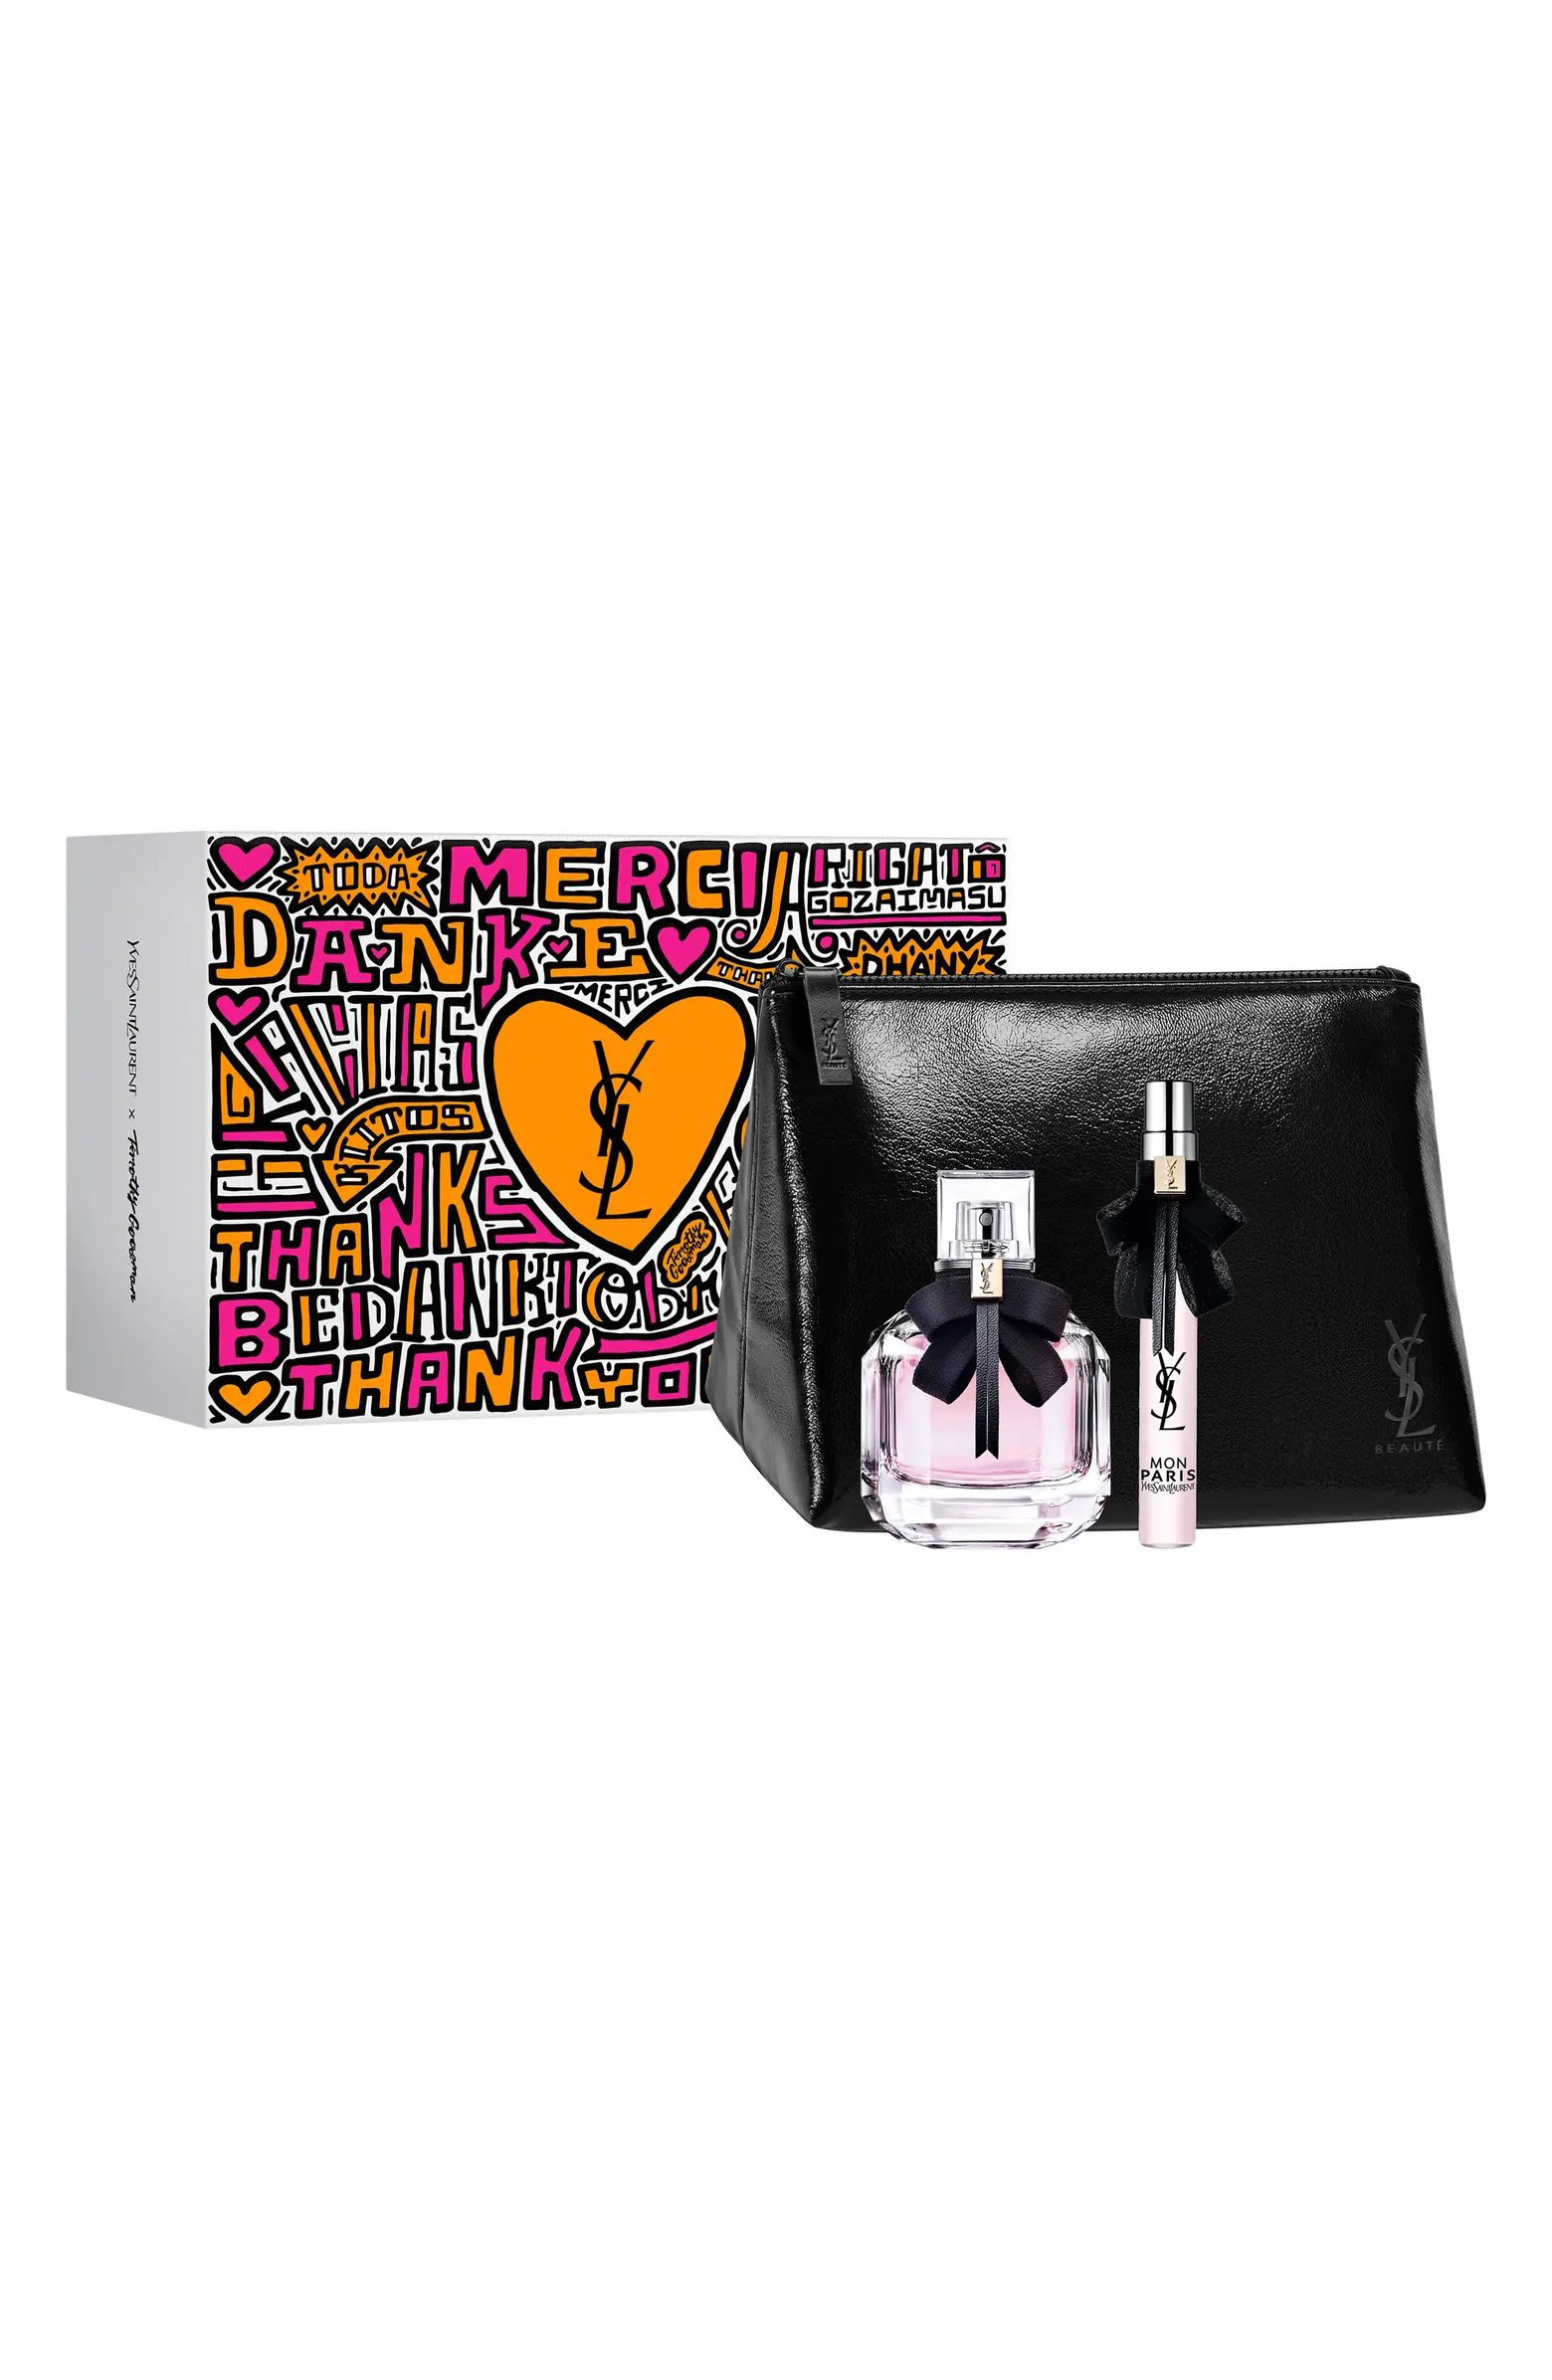 Mon Paris Eau de Parfum Set $164 Value | Nordstrom